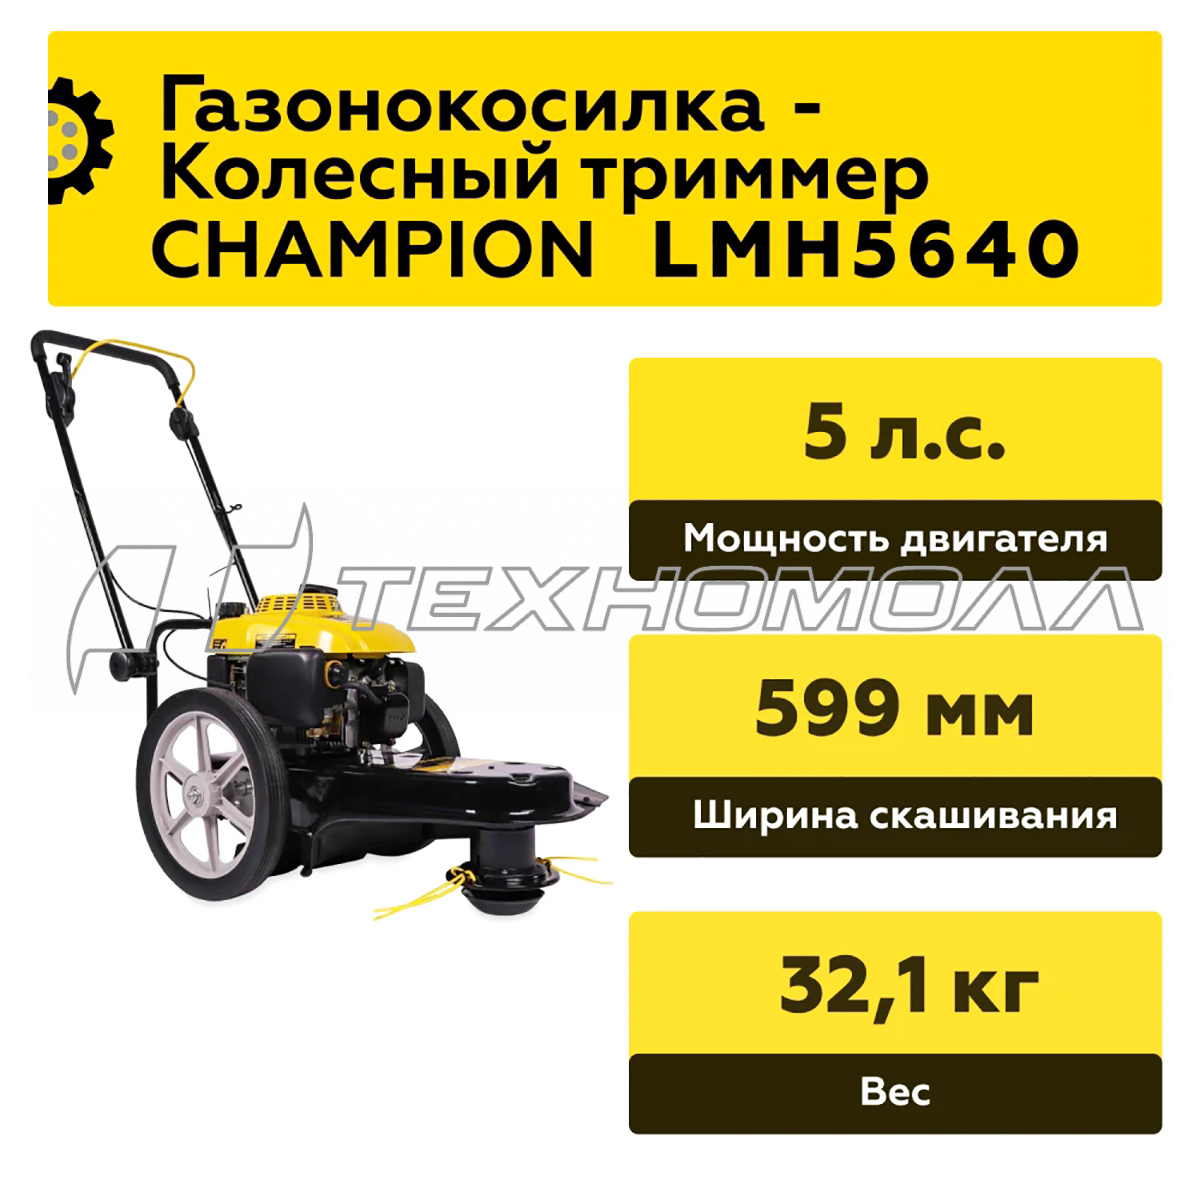 Газонокосилка CHAMPION LMH5640 4,1 кВт